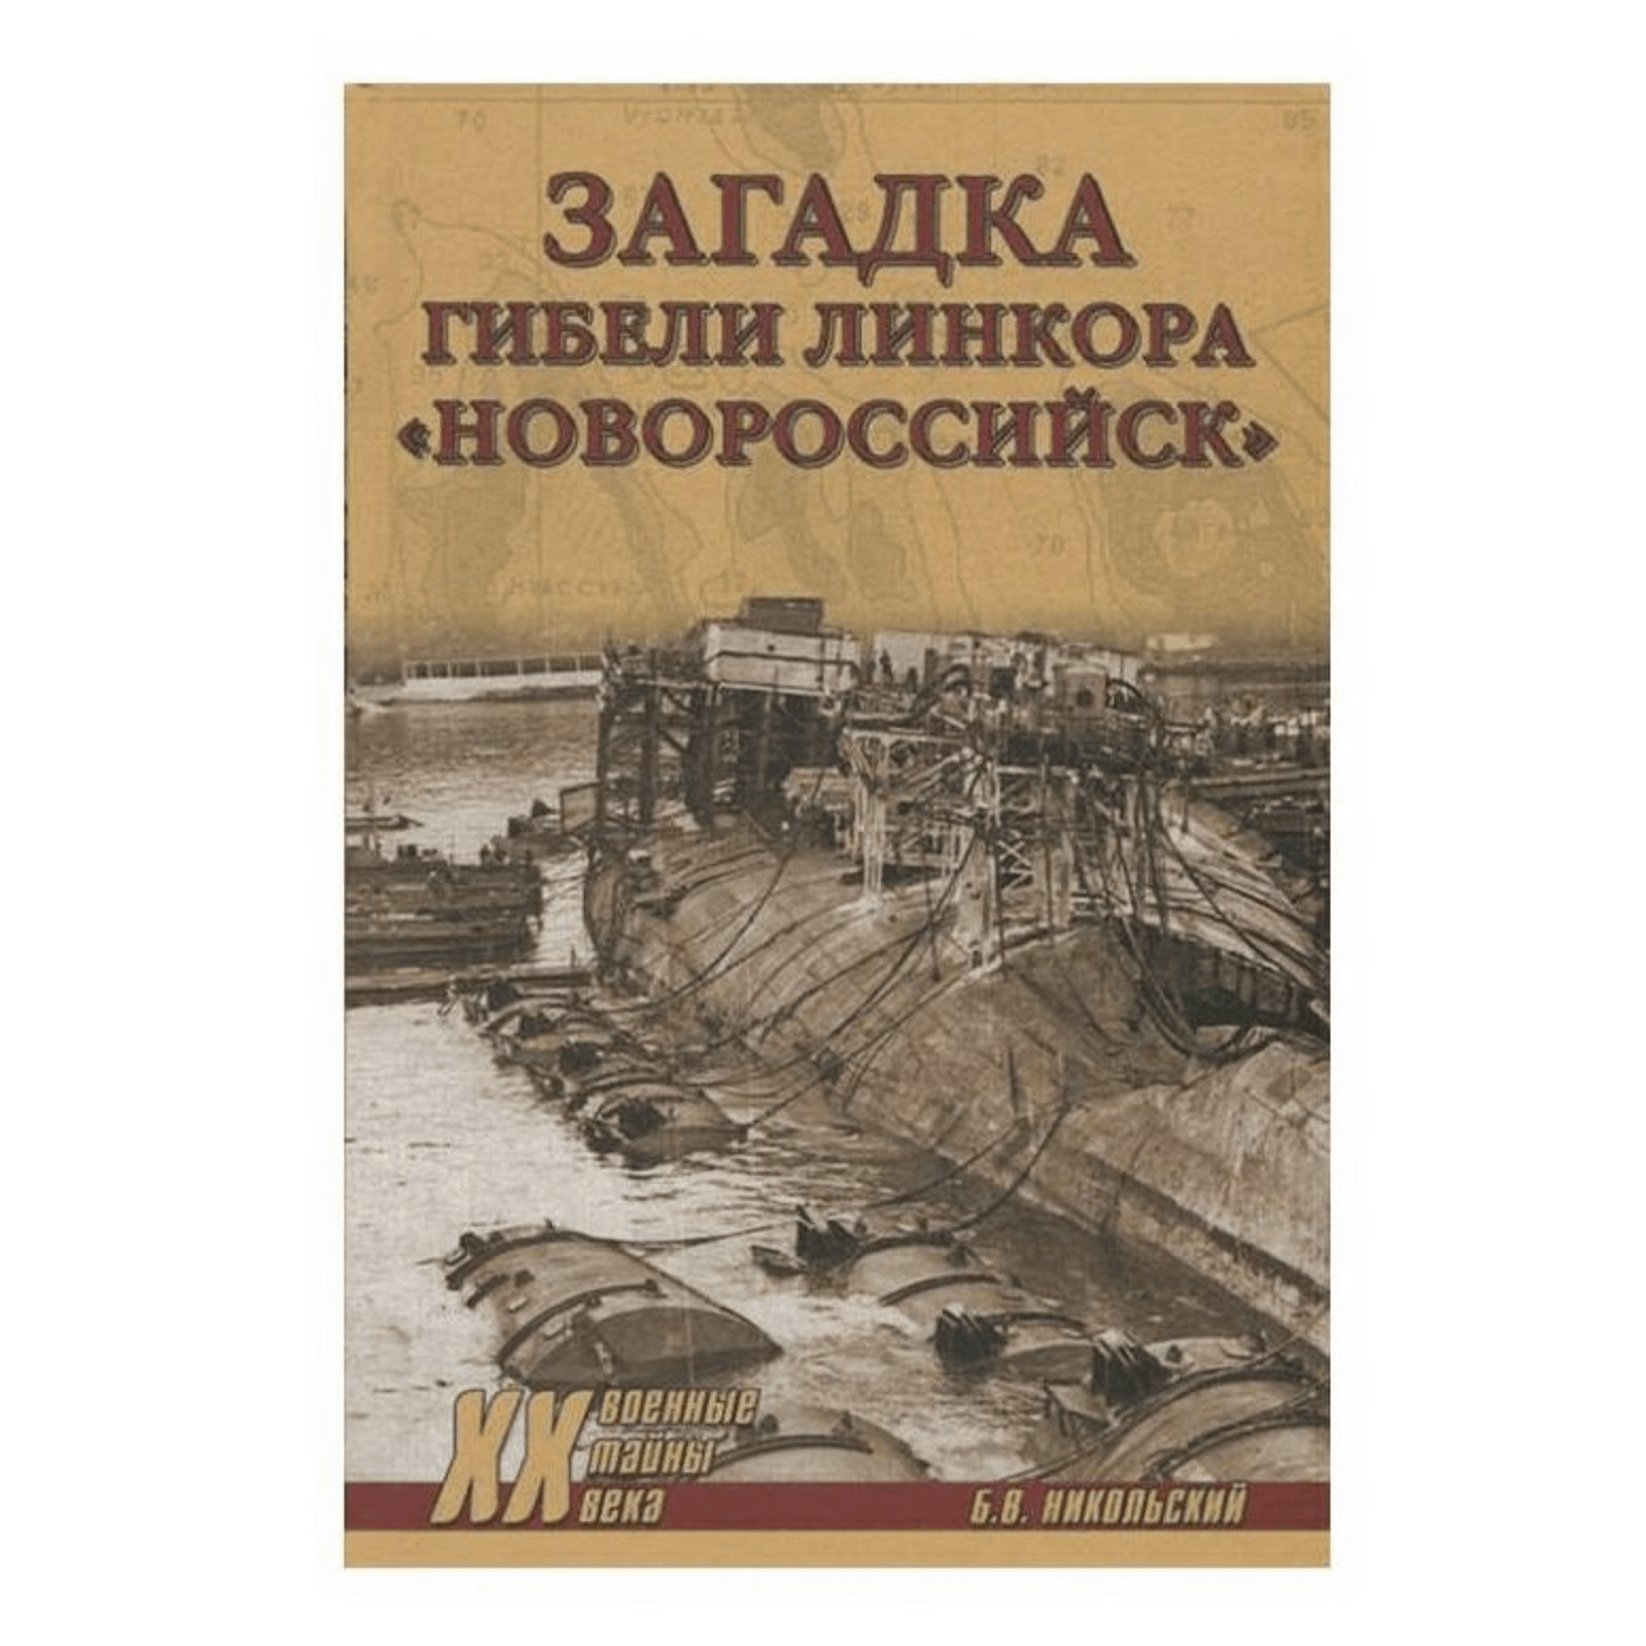 

Книга Загадки гибели линкора Новороссийск